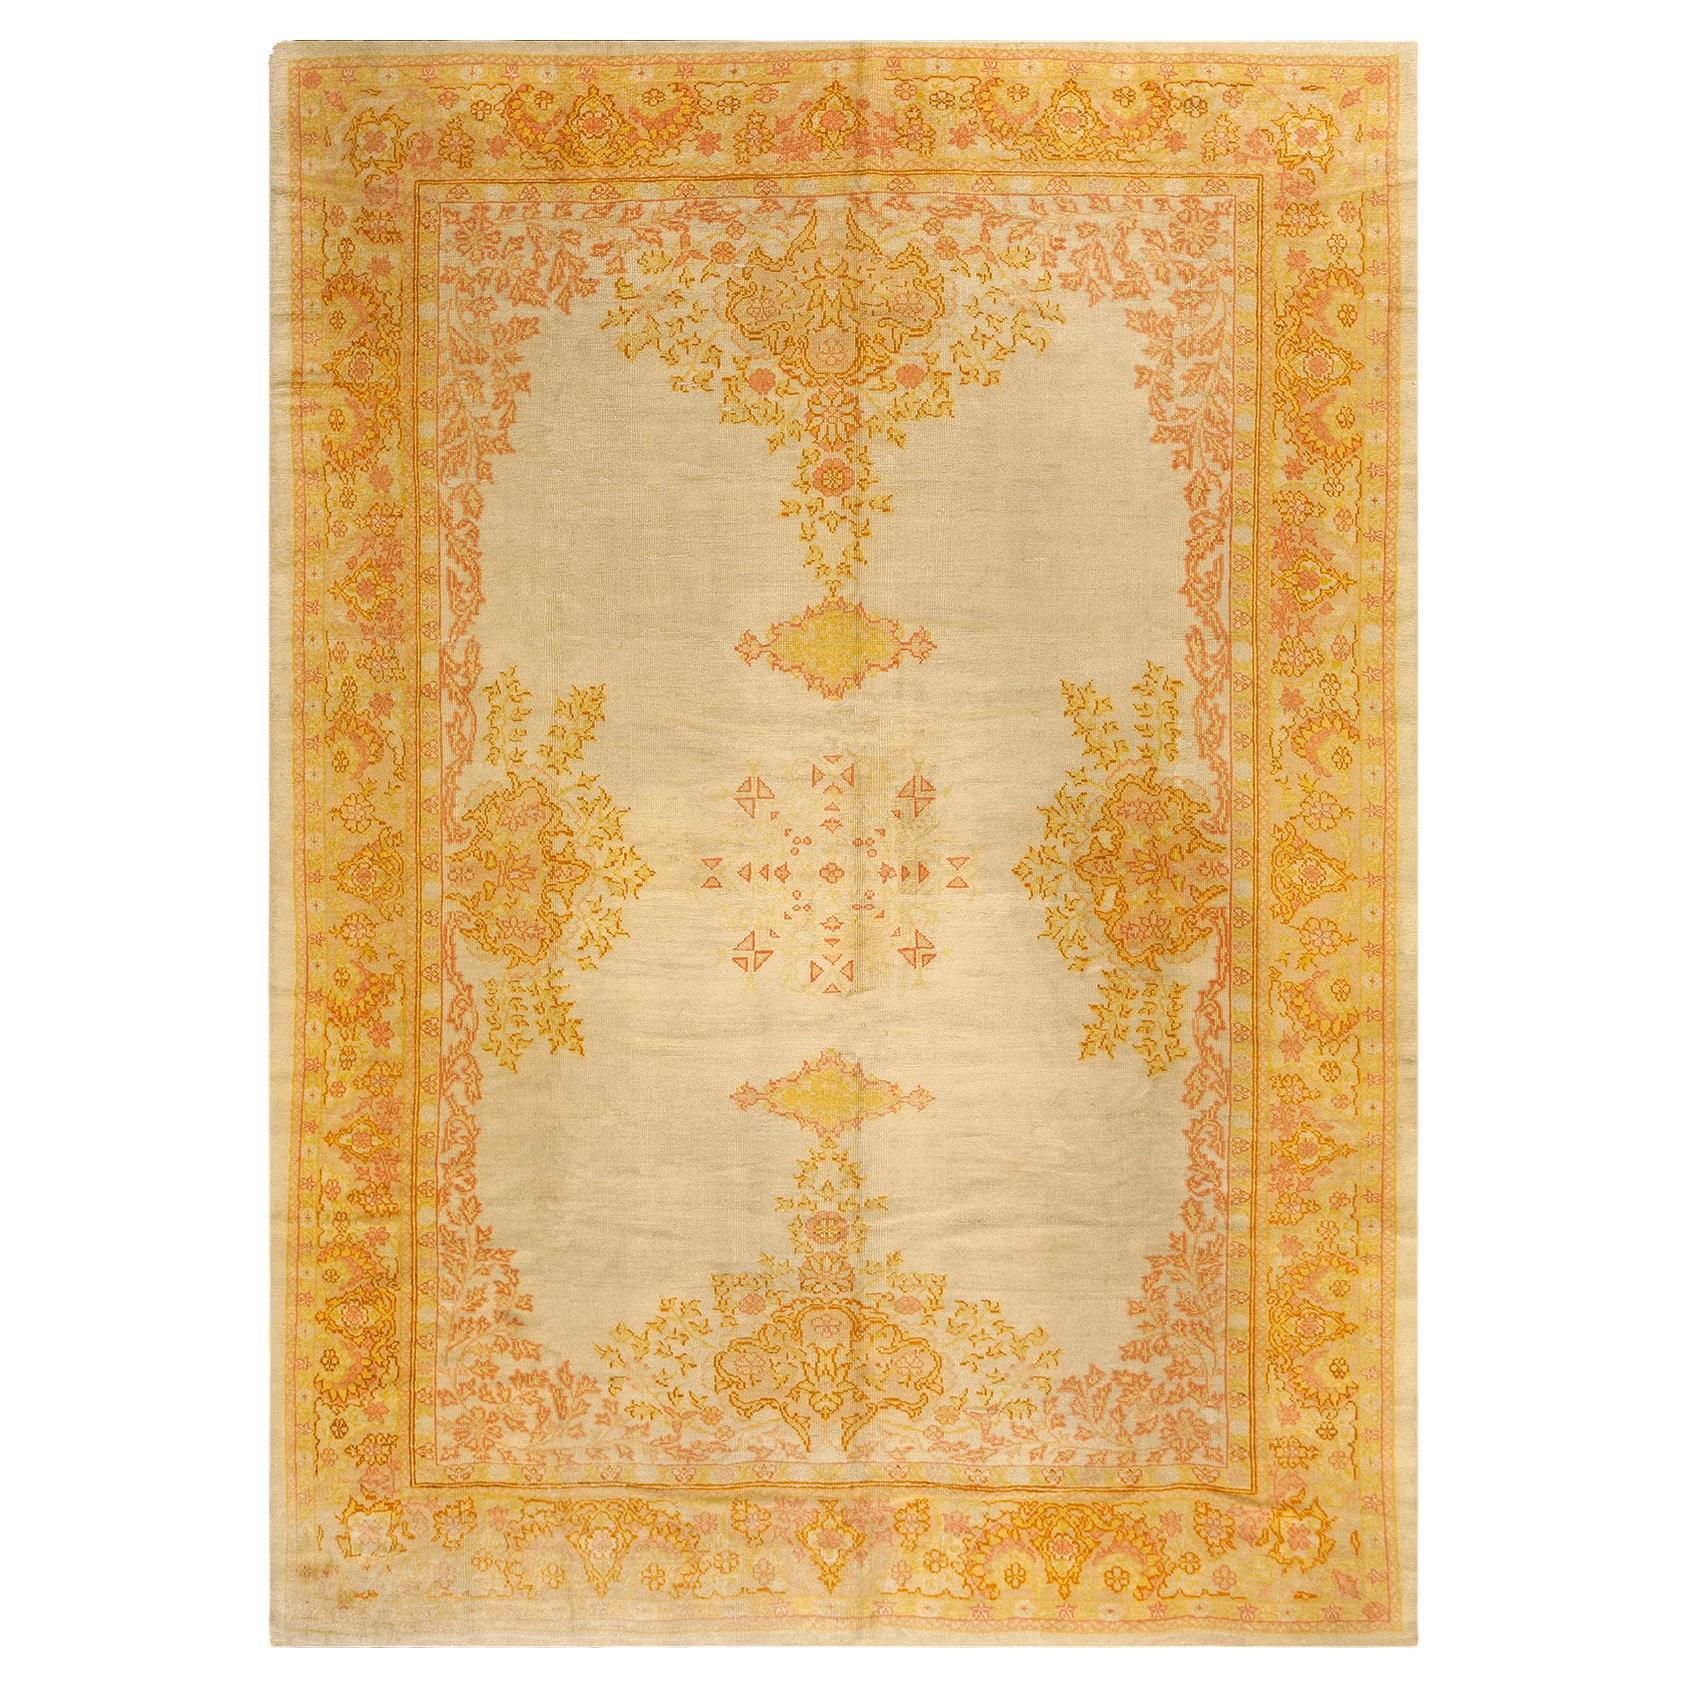 Türkischer Teppich aus dem frühen 20. Jahrhundert ( 8'3" x 11'6" - 252 x 350 )